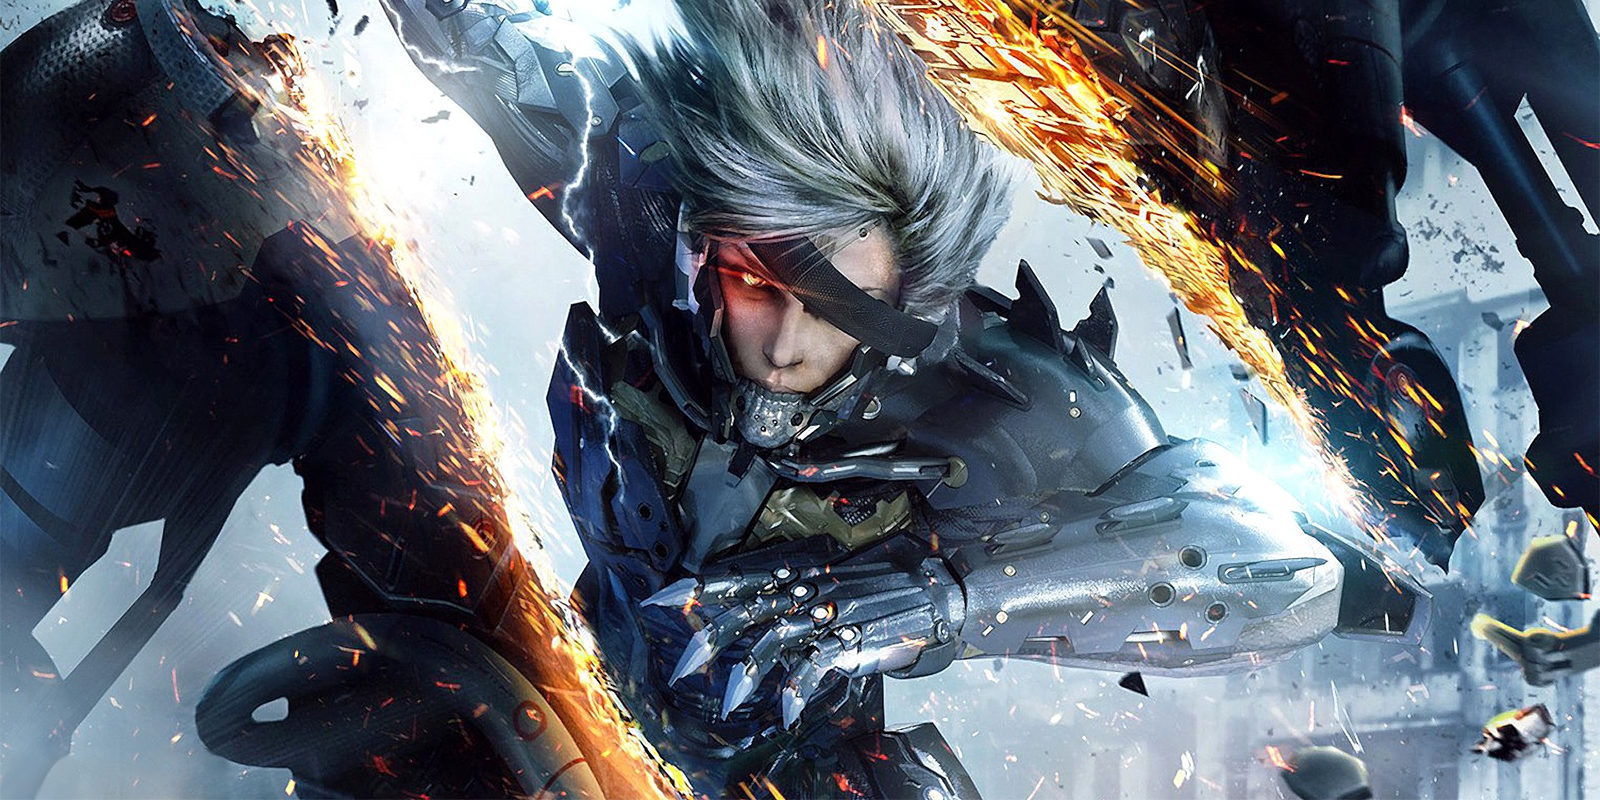 Ya puedes disfrutar de 'Metal Gear Rising Revengeance' en Xbox One gracias a la retrocompatibilidad